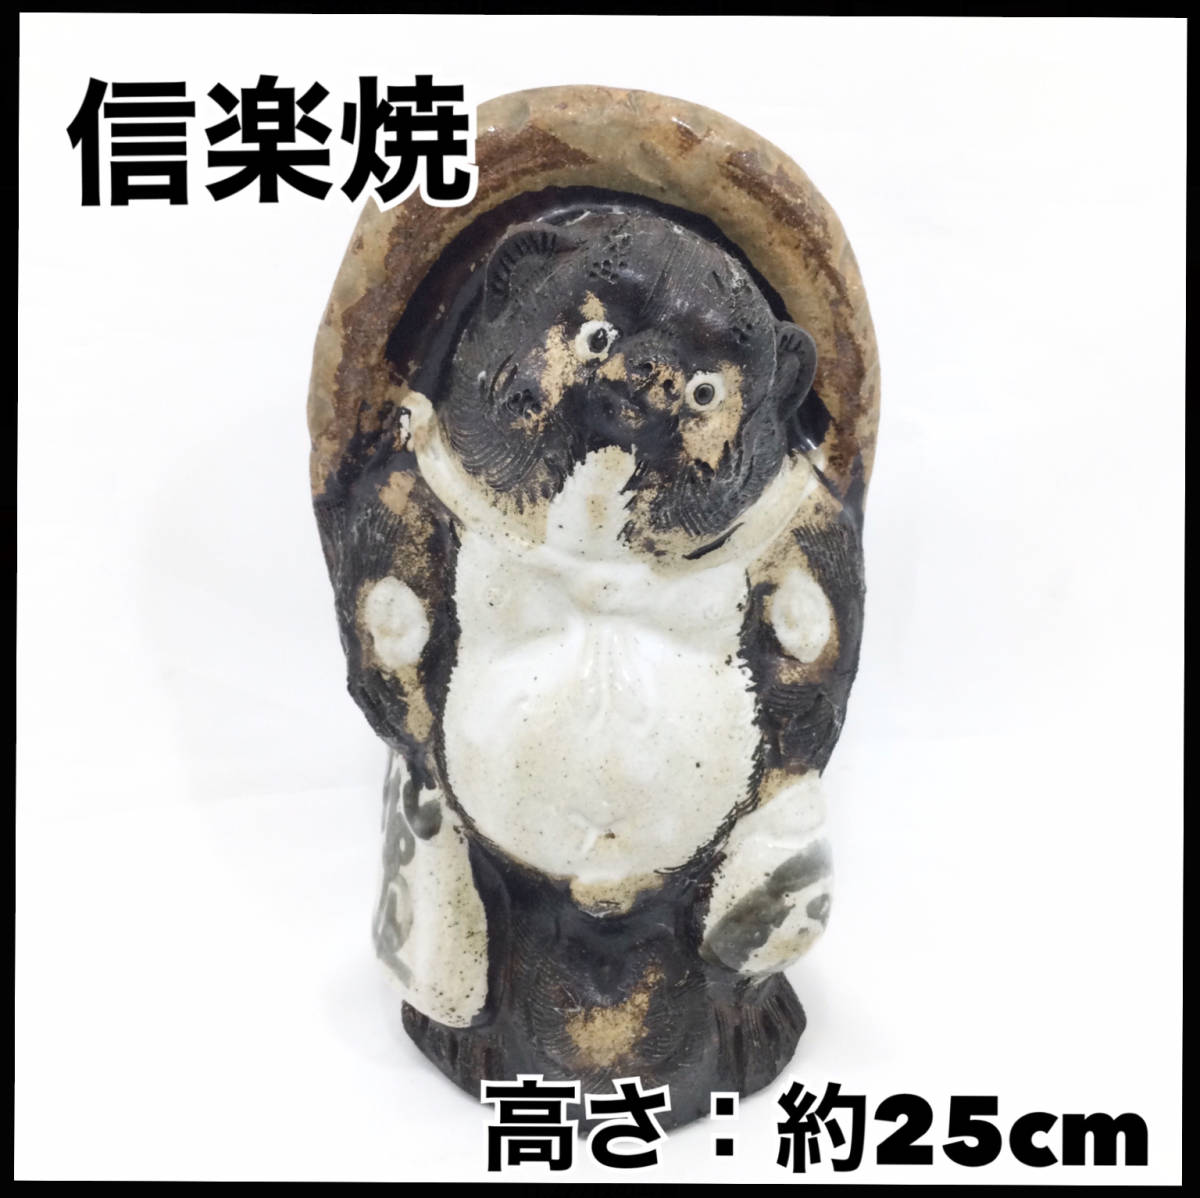 信楽焼 たぬき 狸 縁起物 置物 約25cm 民芸品 年代物 陶器 和風インテリア (E1228)_画像1